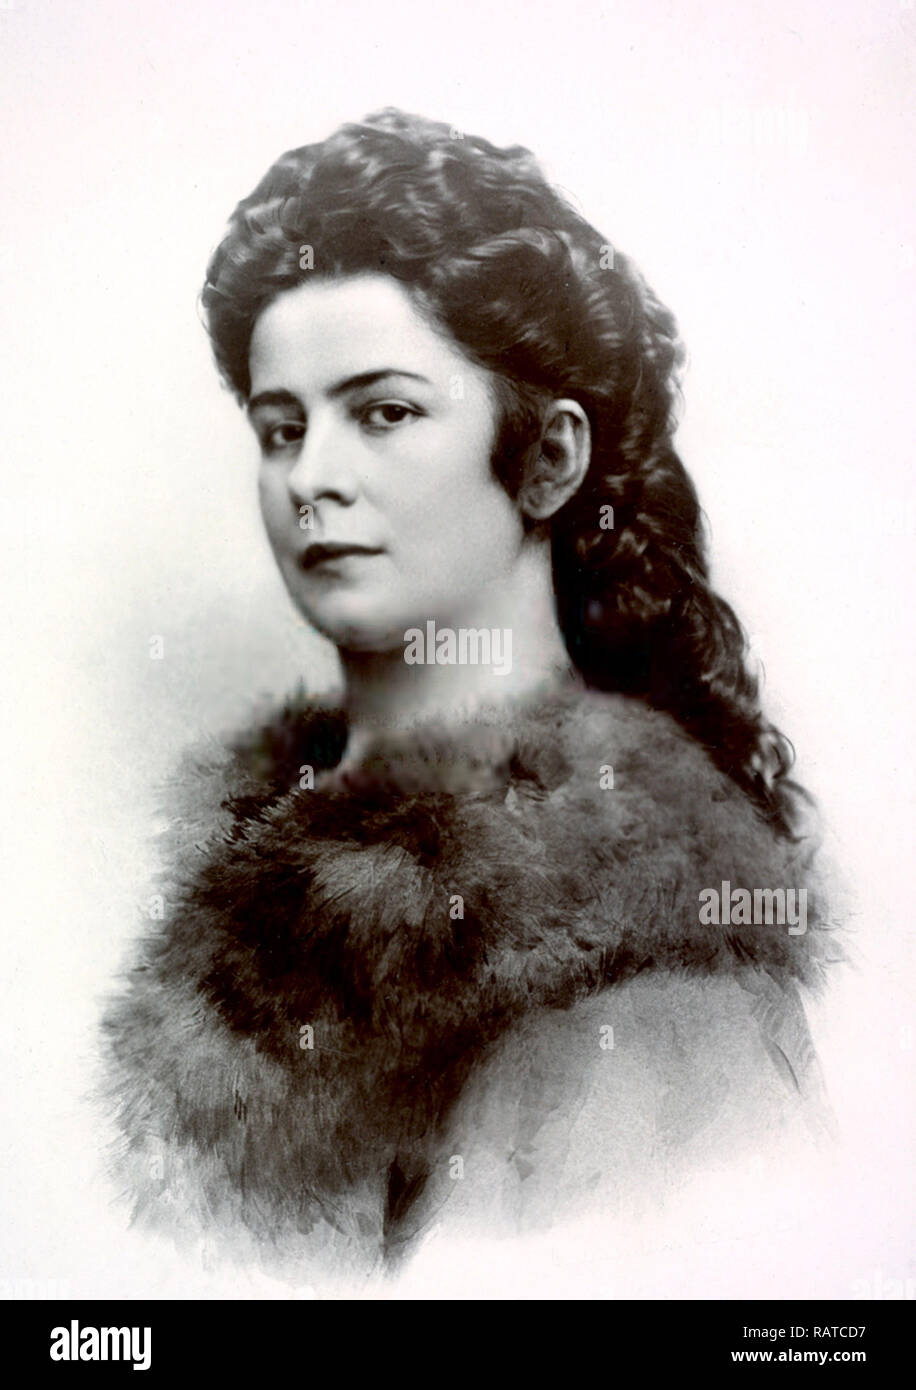 SISSI Y FRANCISCO JOSÉ La-emperatriz-elisabeth-de-austria-elisabeth-de-austria-1837-1898-la-emperatriz-de-austria-y-reina-de-hungria-el-matrimonio-con-el-emperador-francisco-jose-i-ratcd7